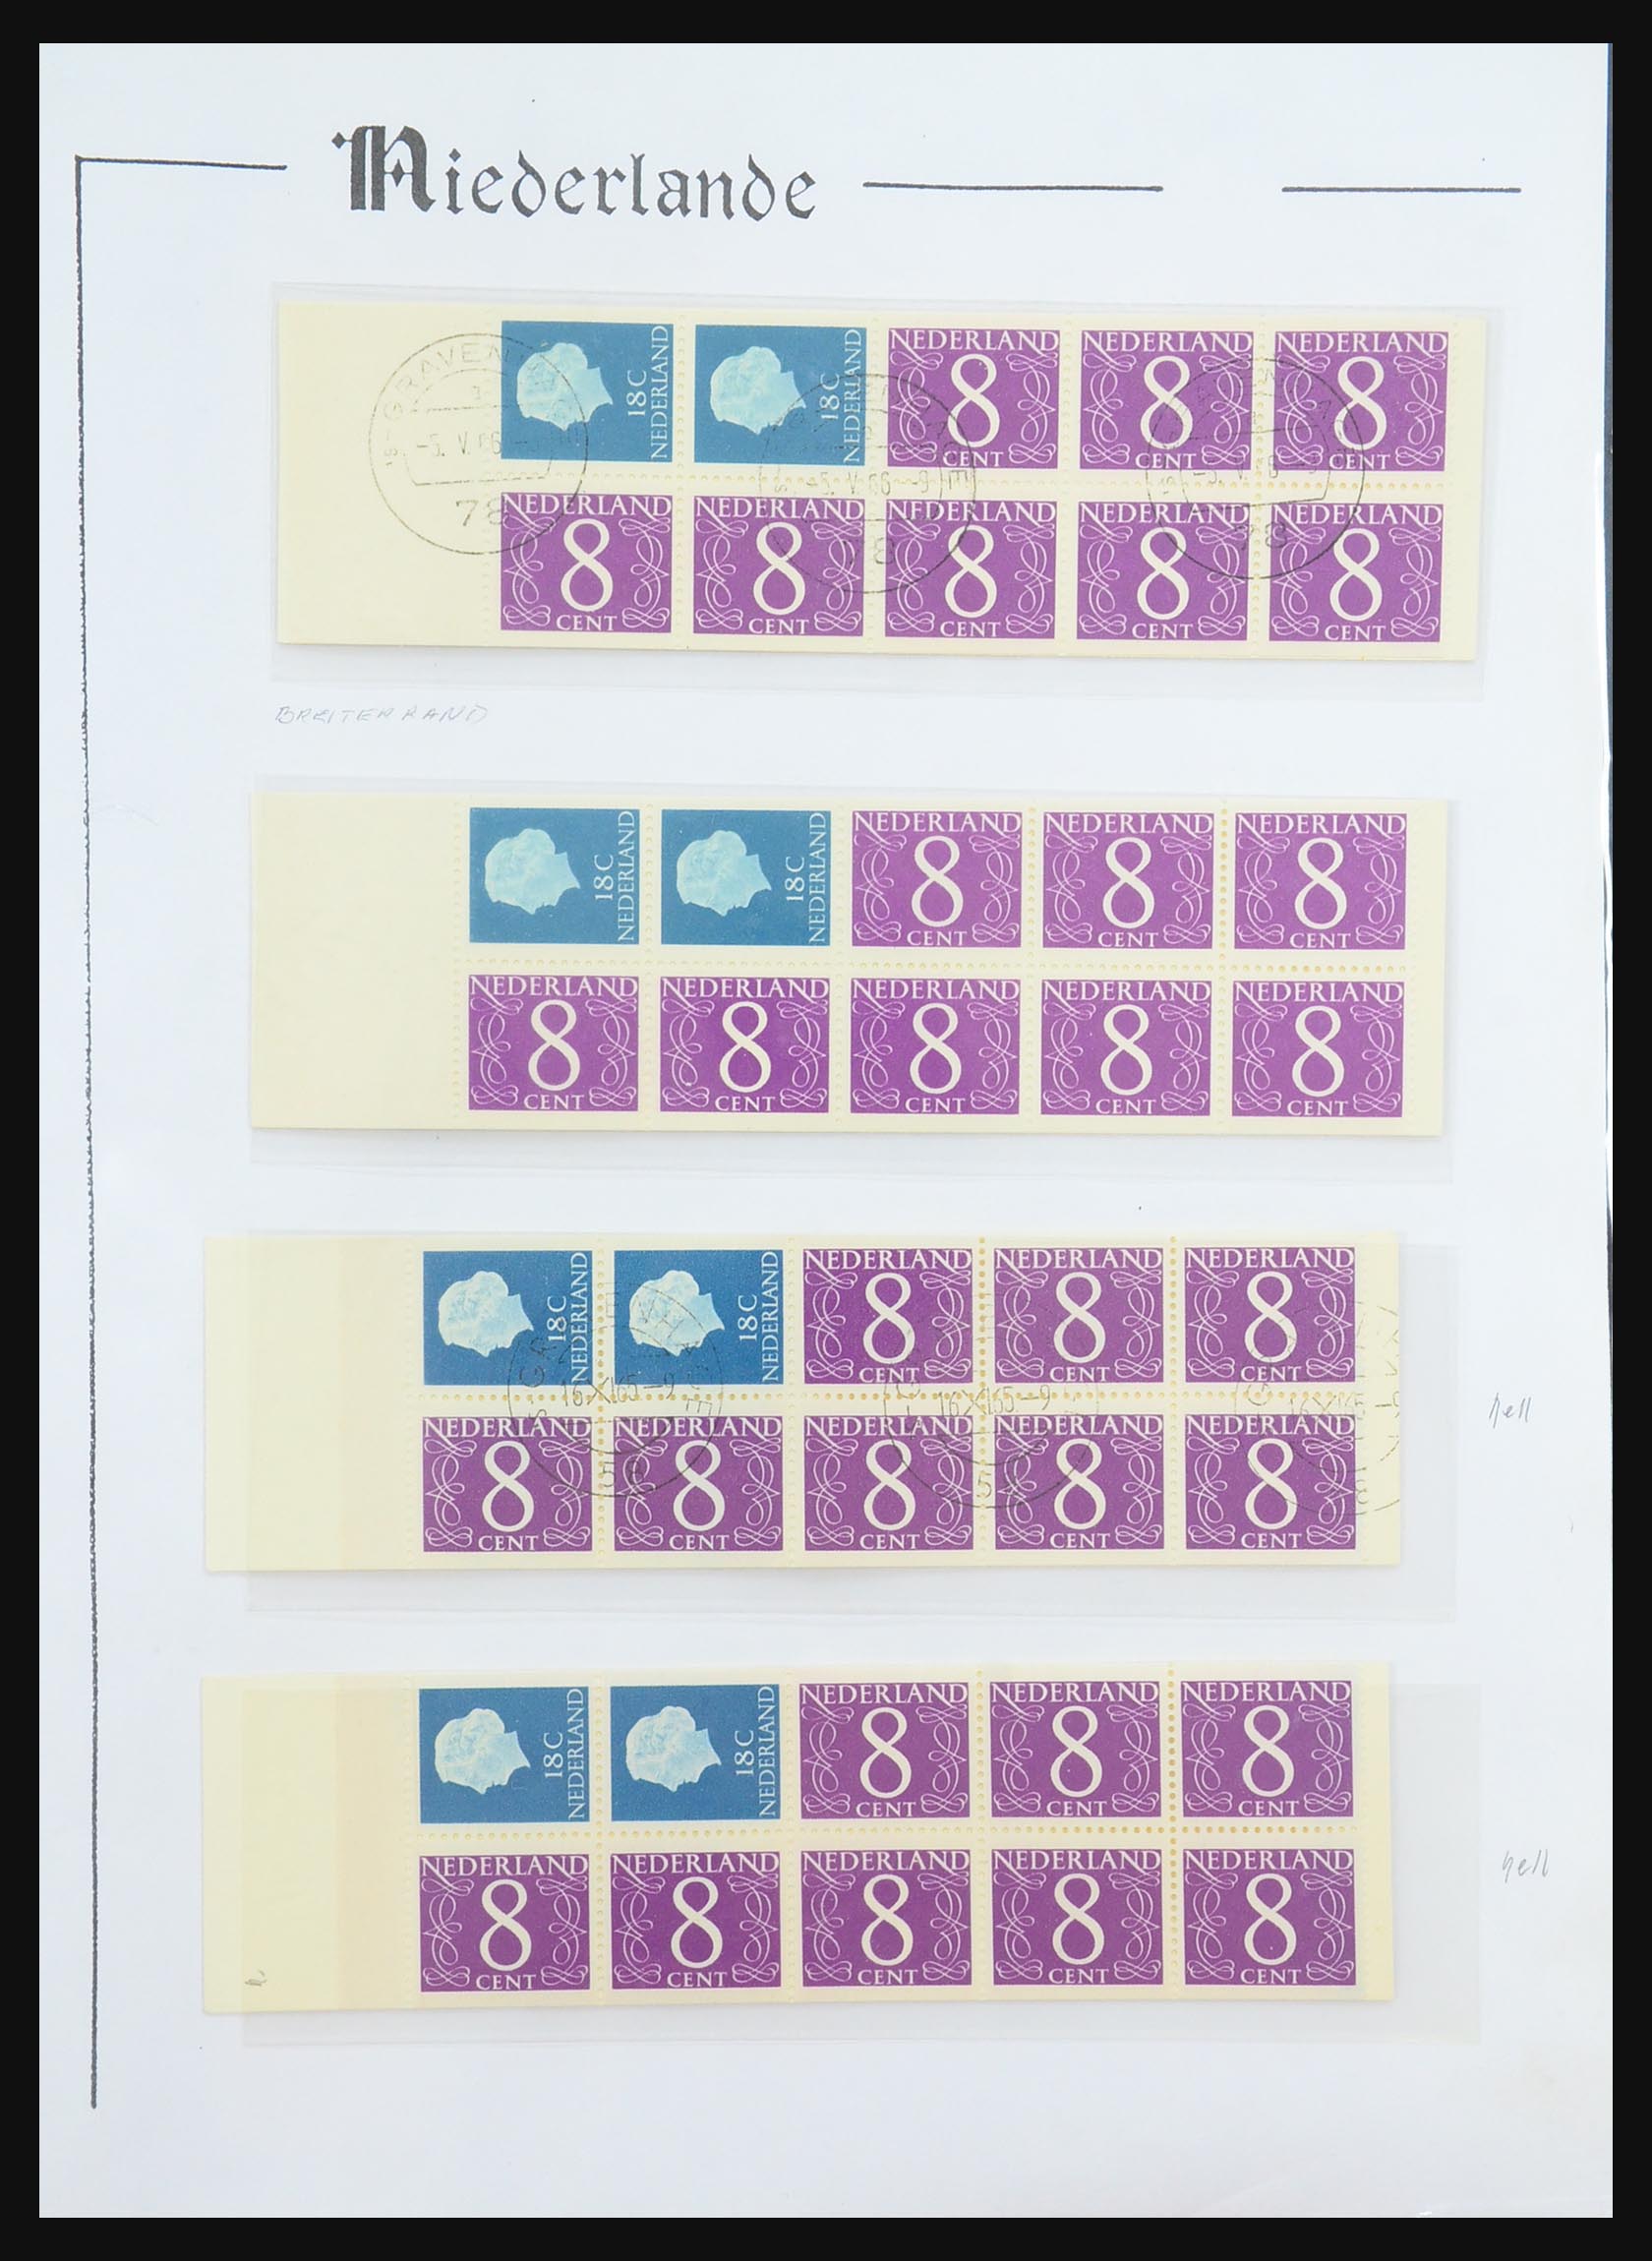 31311 008 - 31311 Netherlands stamp booklets 1964-1994.